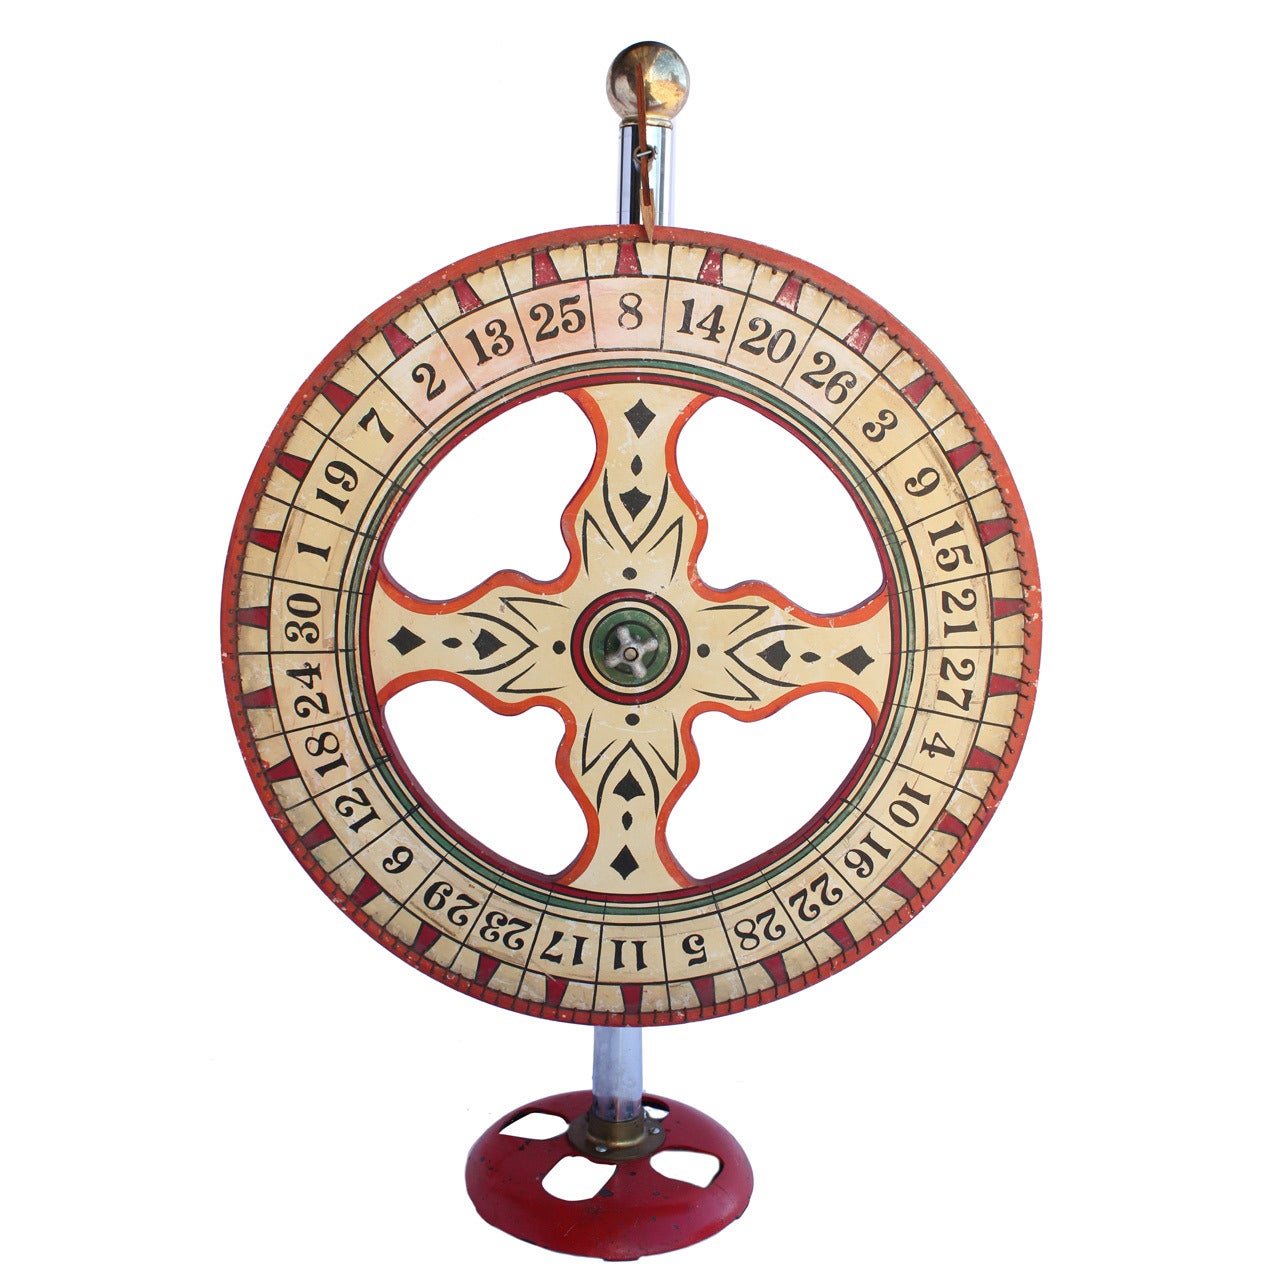 Vintage Carnival Game Wheel For Sale